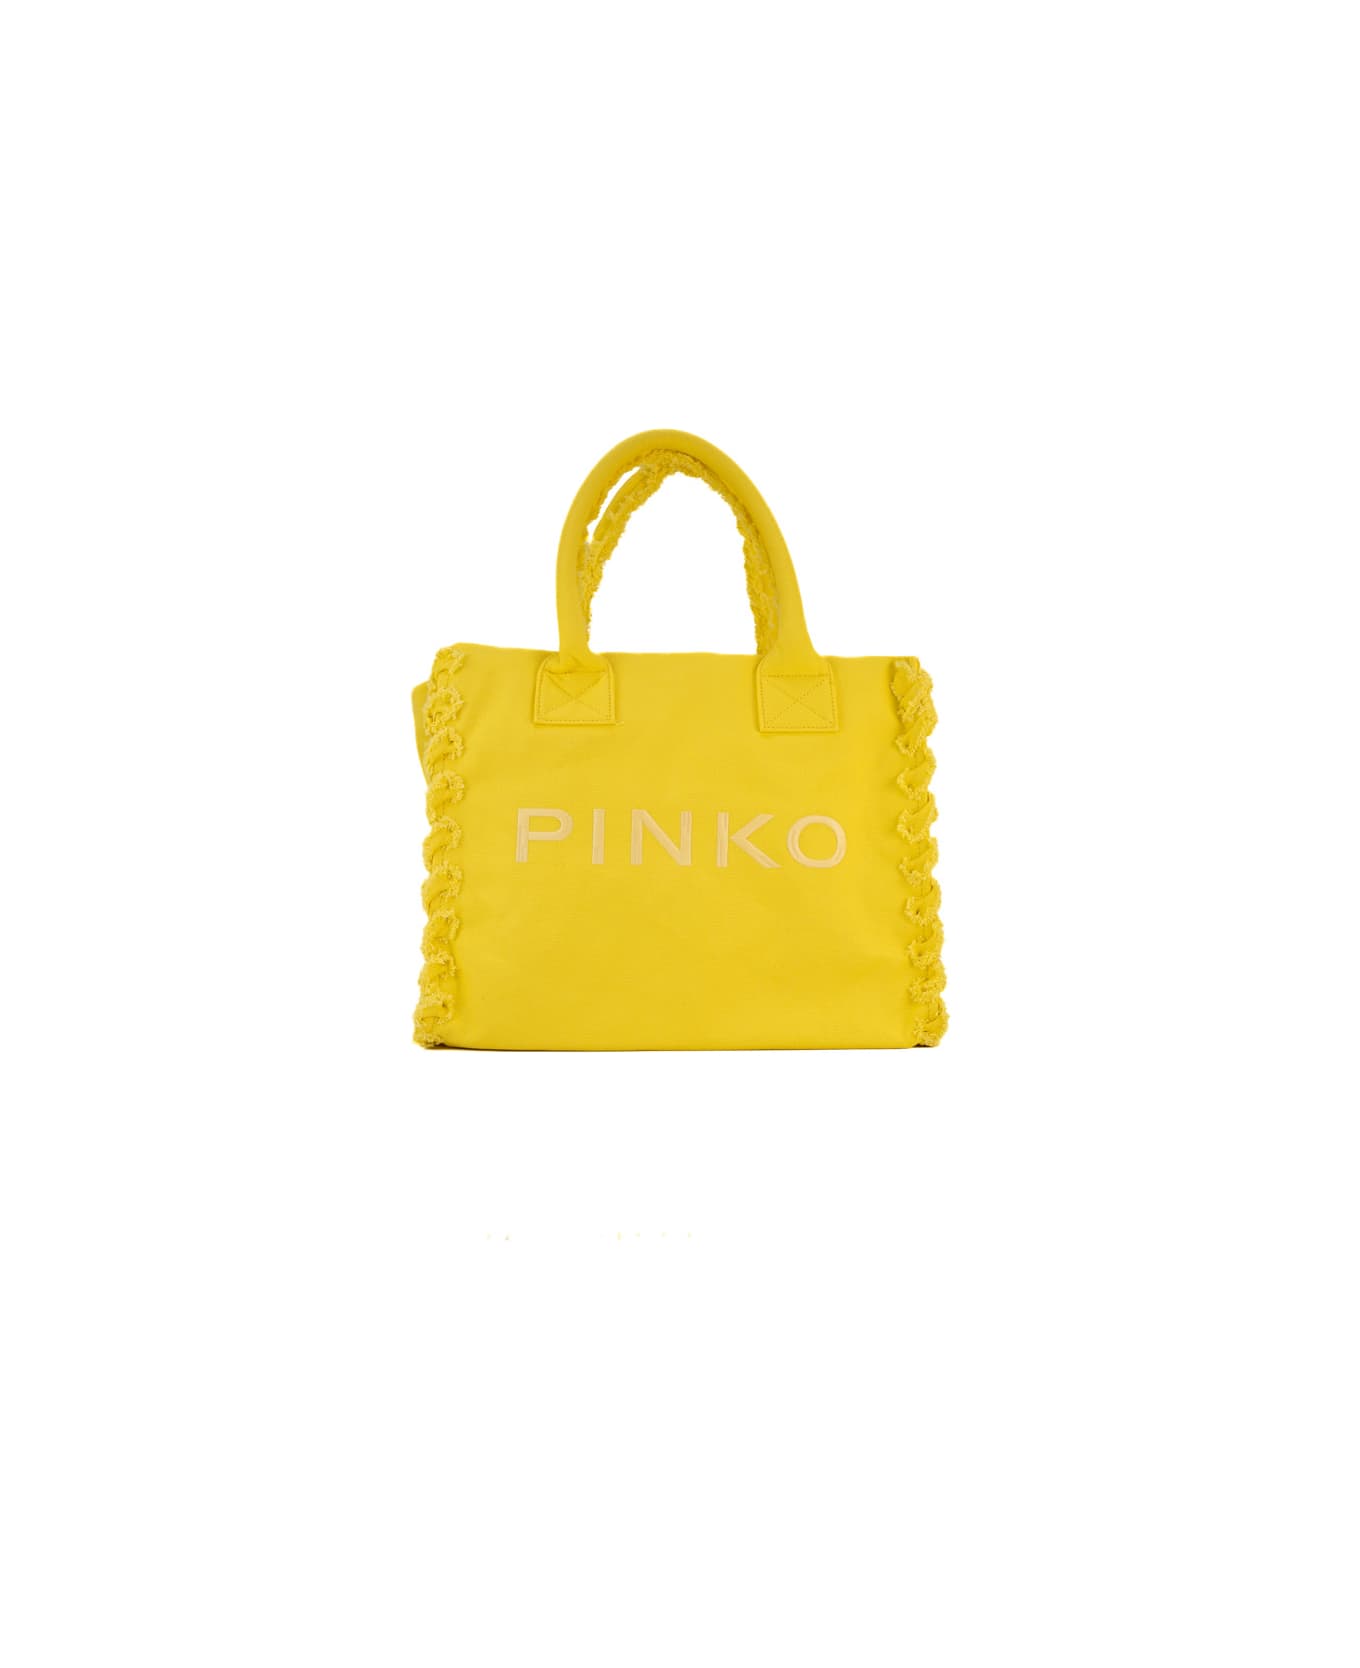 Pinko Canvas Beach Shopper - Giallo sole-antique gold